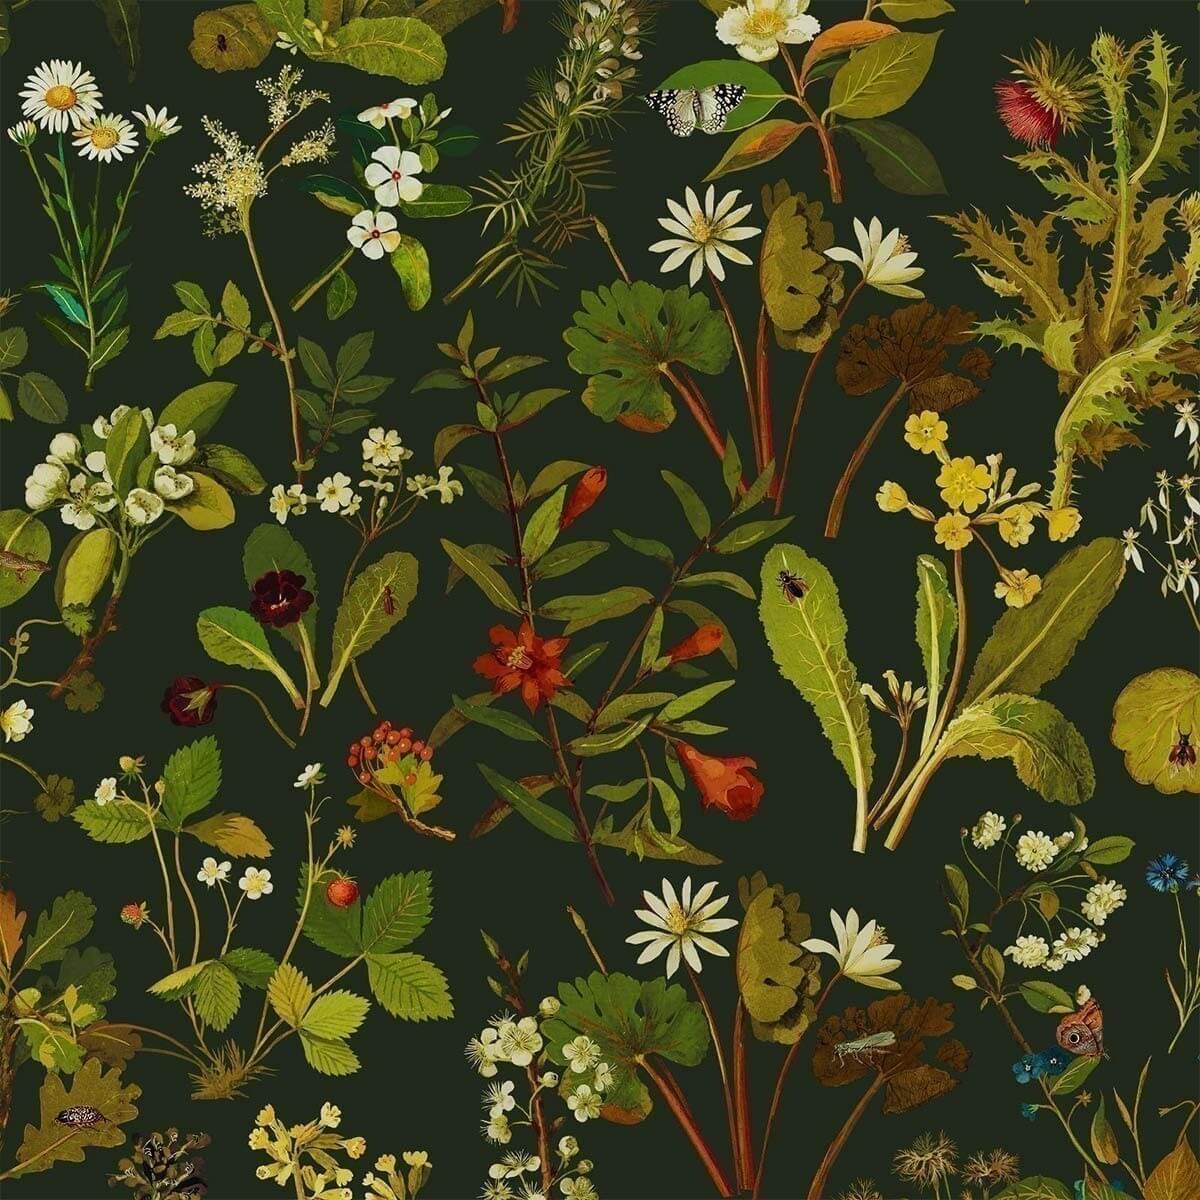 Borãstapeter Herbarium Multi Wallpaper | DecoratorsBest